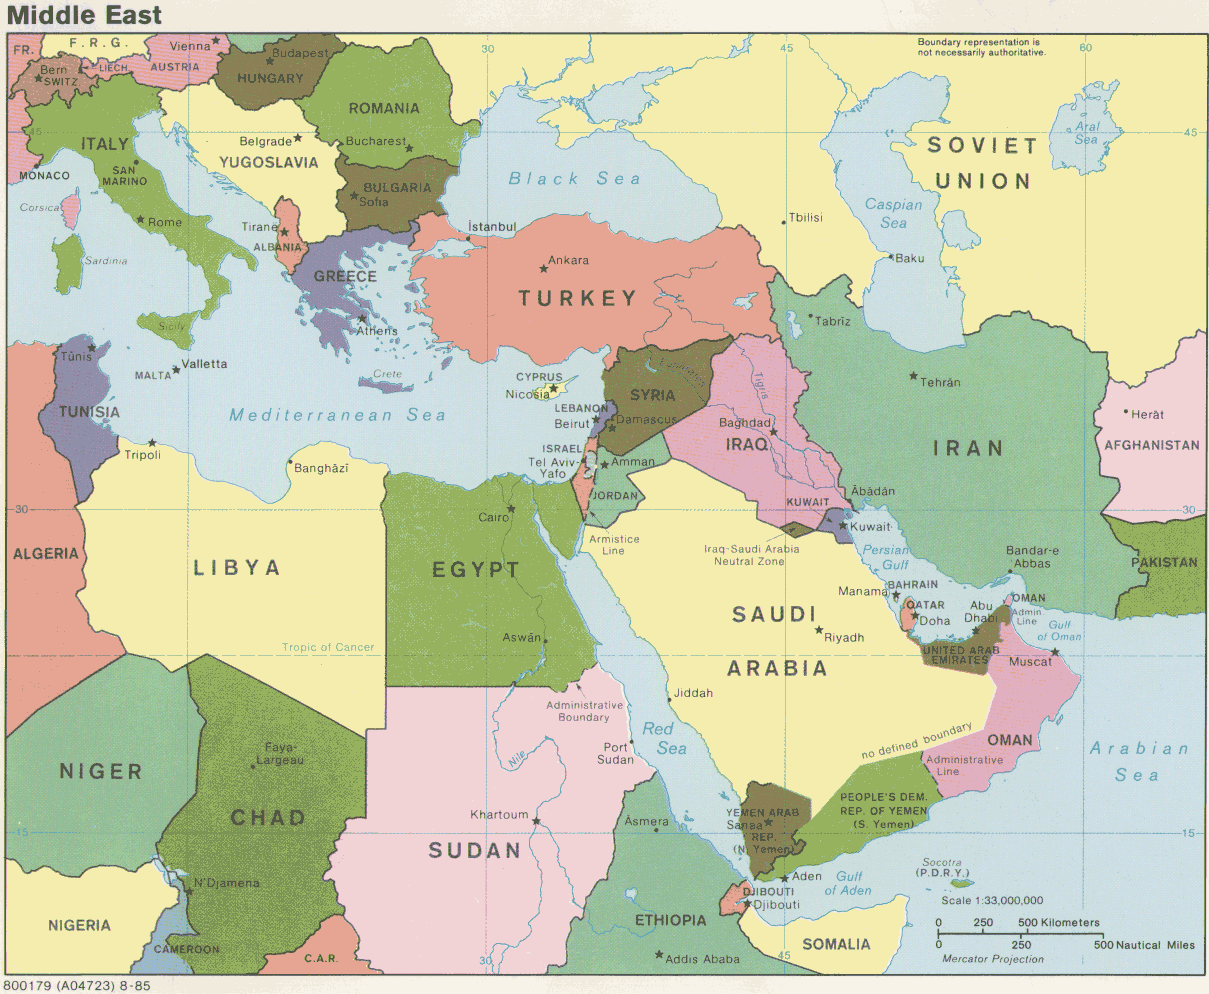 Mapa Politico de Oriente Medio 1985